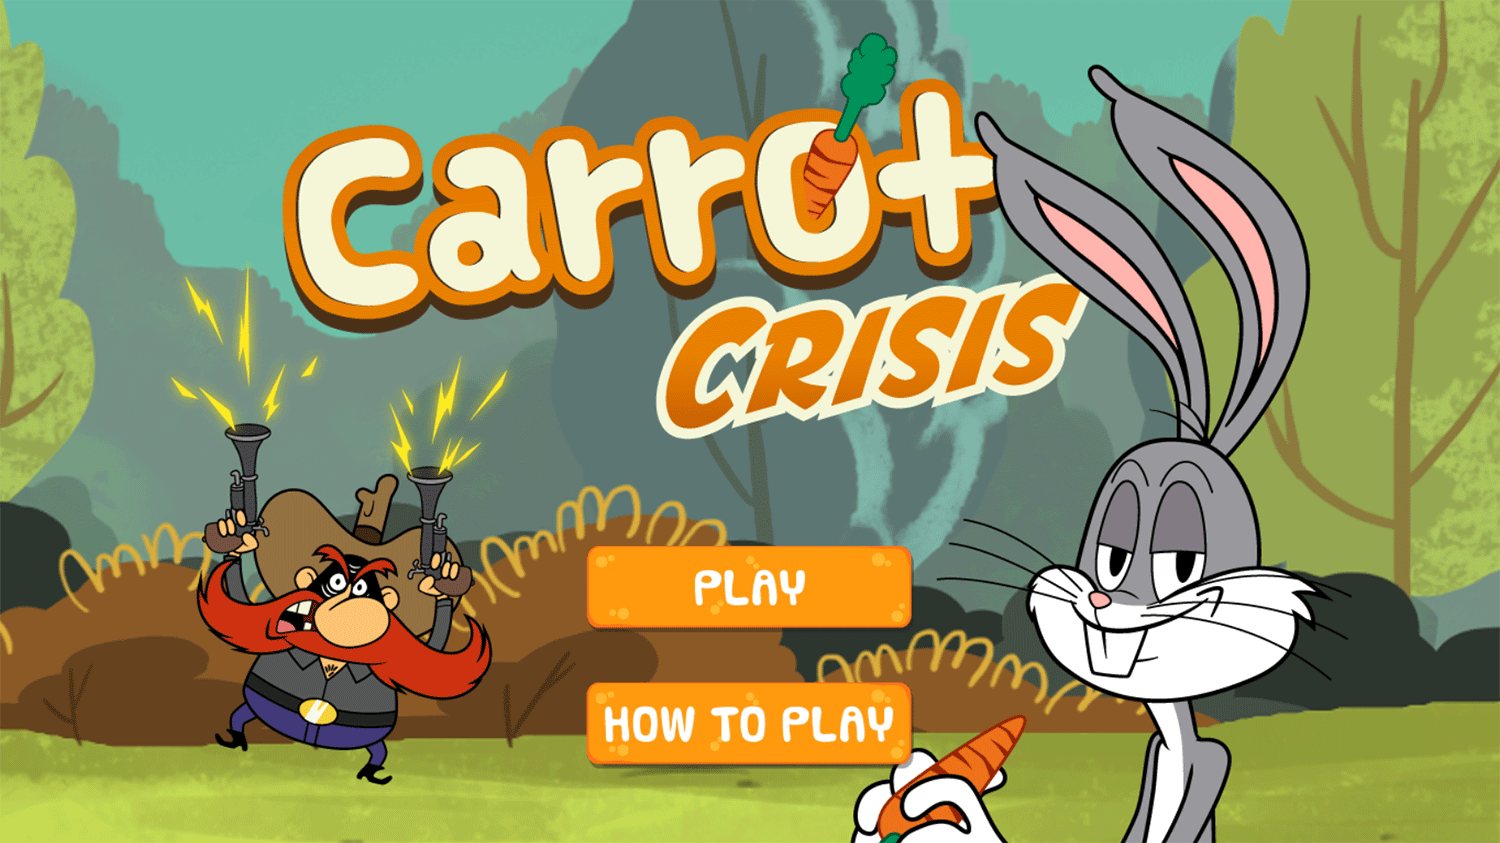 Bugs Bunny Carrot Crisis Welcome Screen Screenshot.